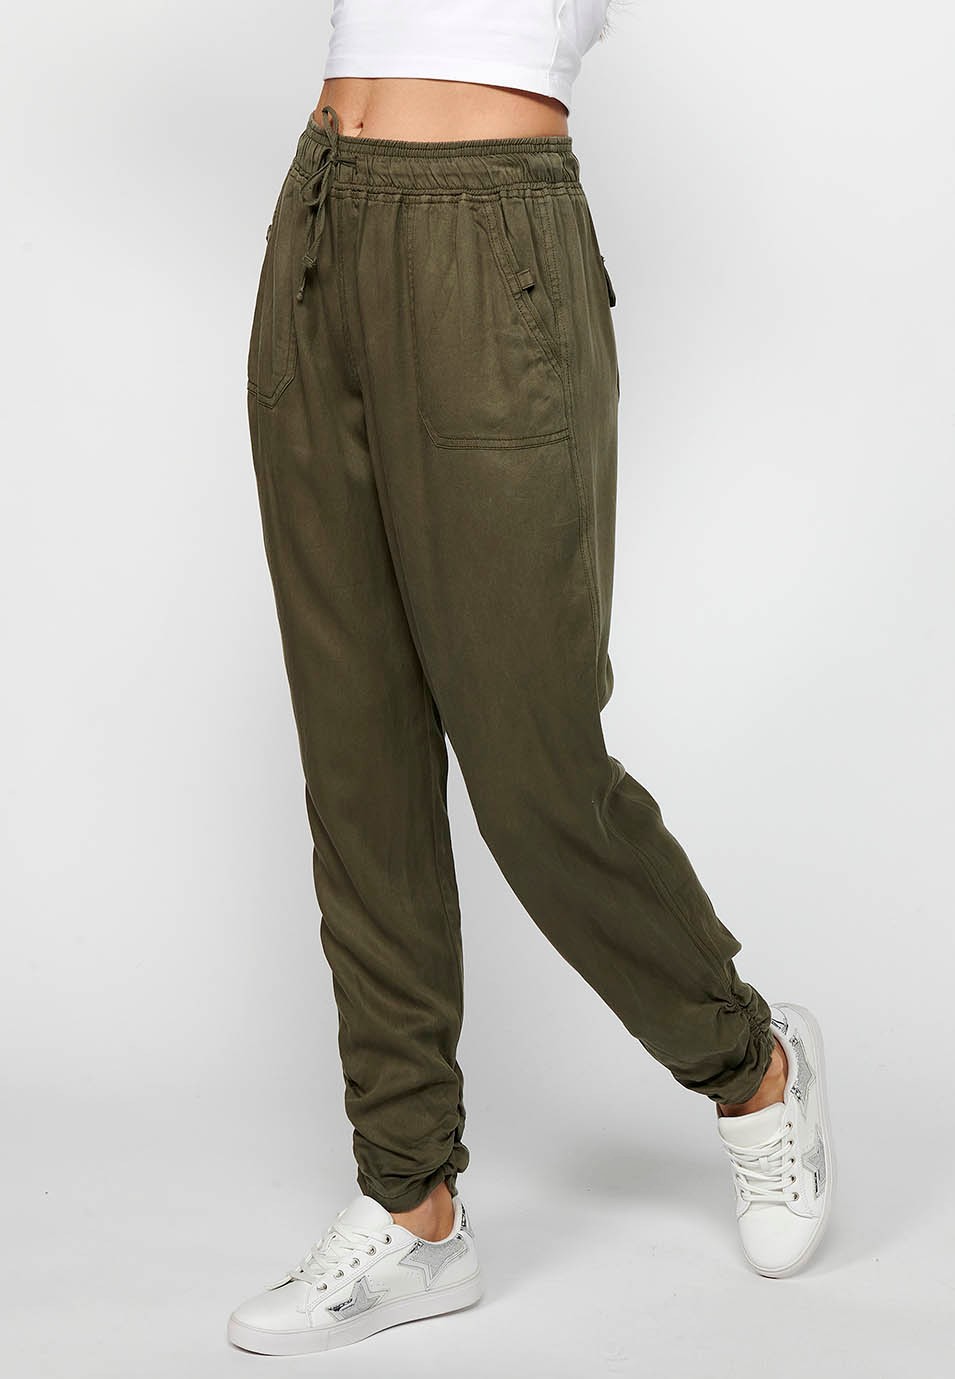 Lange Jogginghose mit gewelltem Finish und gummiertem Bund mit vier Taschen, zwei Gesäßtaschen mit Klappe in der Farbe Khaki für Damen 2